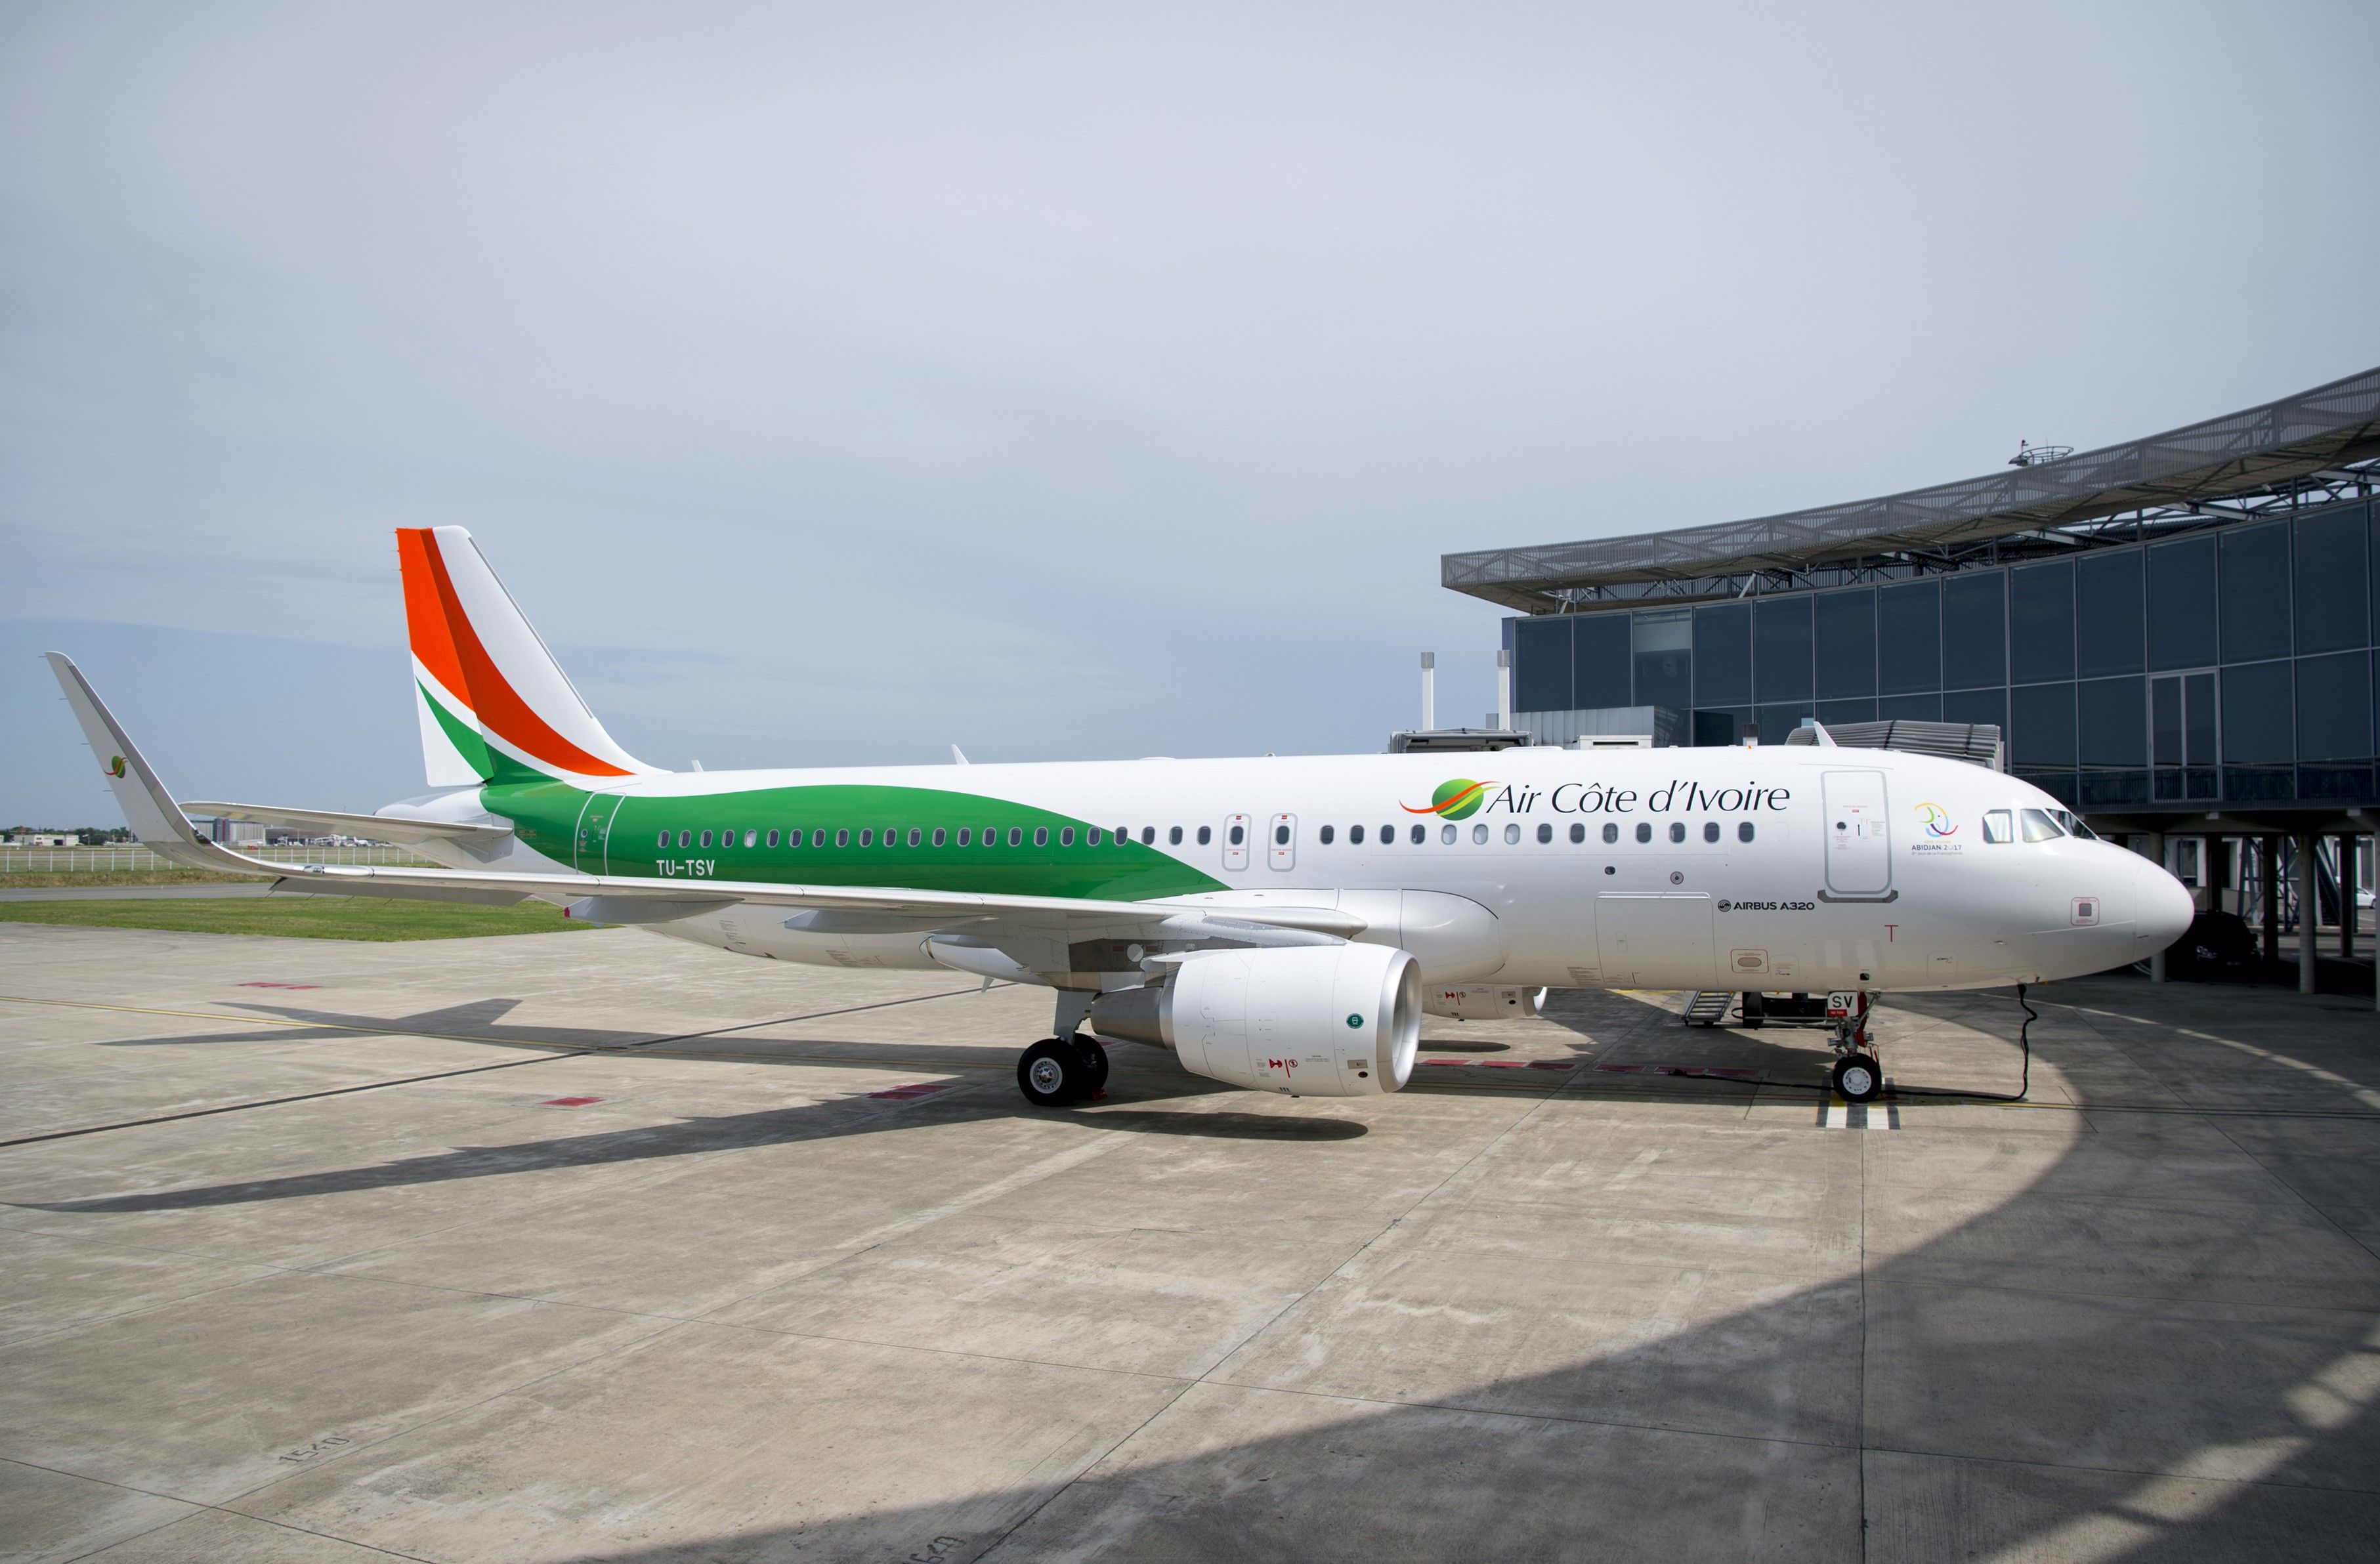 Эйр 2017. Air Cote d'Ivoire. "Air Cote d'Ivoire" Boarding Pass. Air Cote d'Ivoire logo vector.